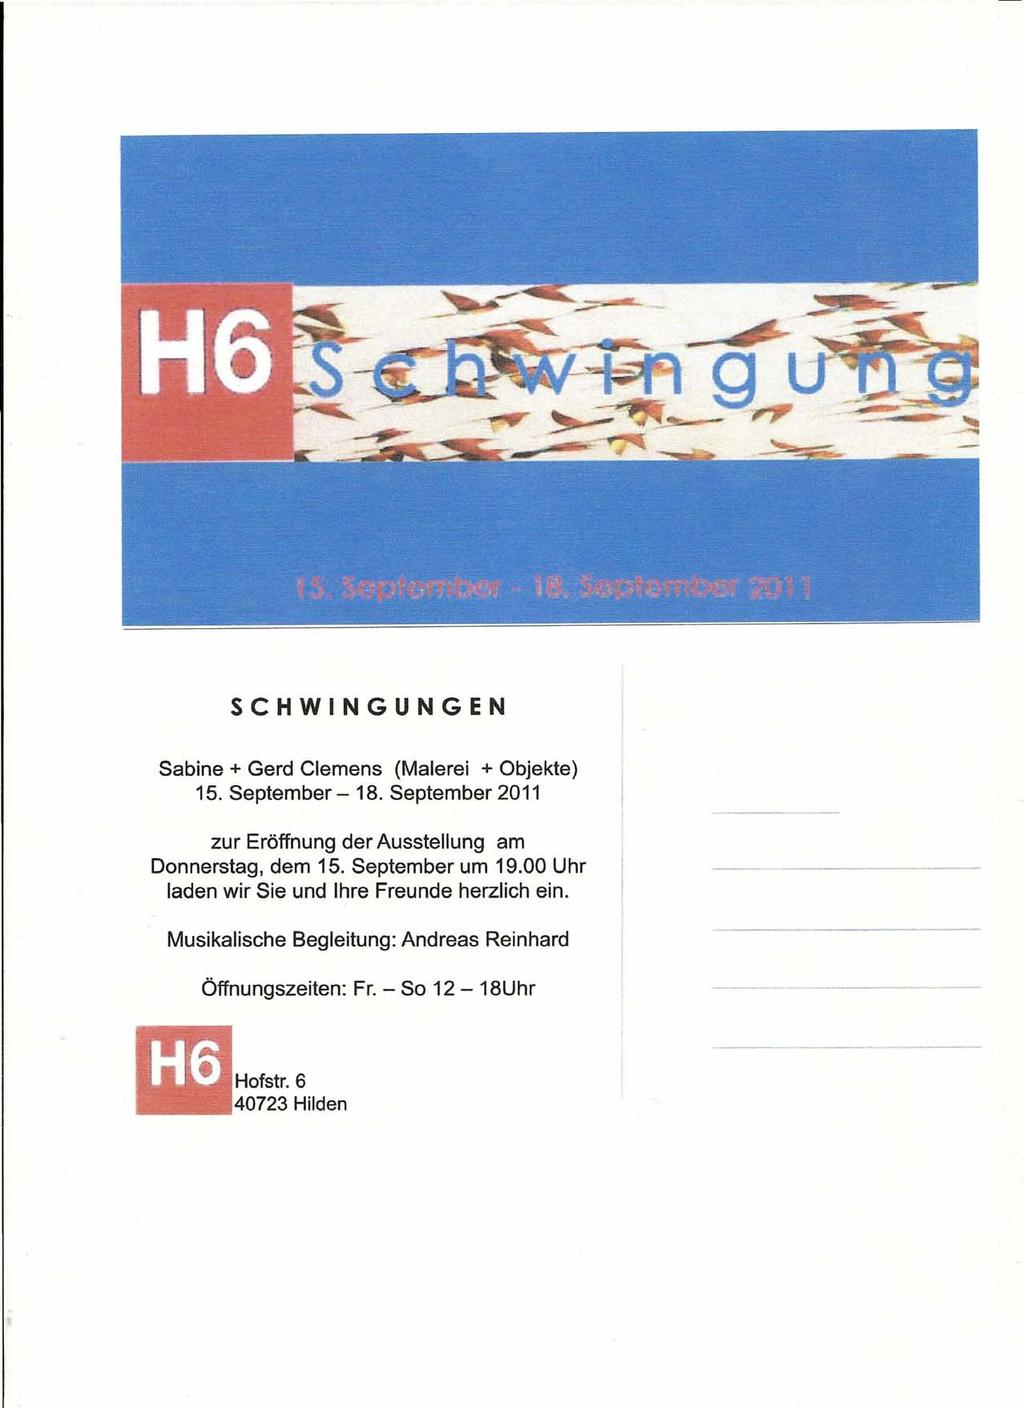 SCHWINGUNGEN Sabine + Gerd Clemens (Malerei + Objekte) 15. September - 18. September 2011 zur Eröffnung der Ausstellung am Donnerstag, dem 15.